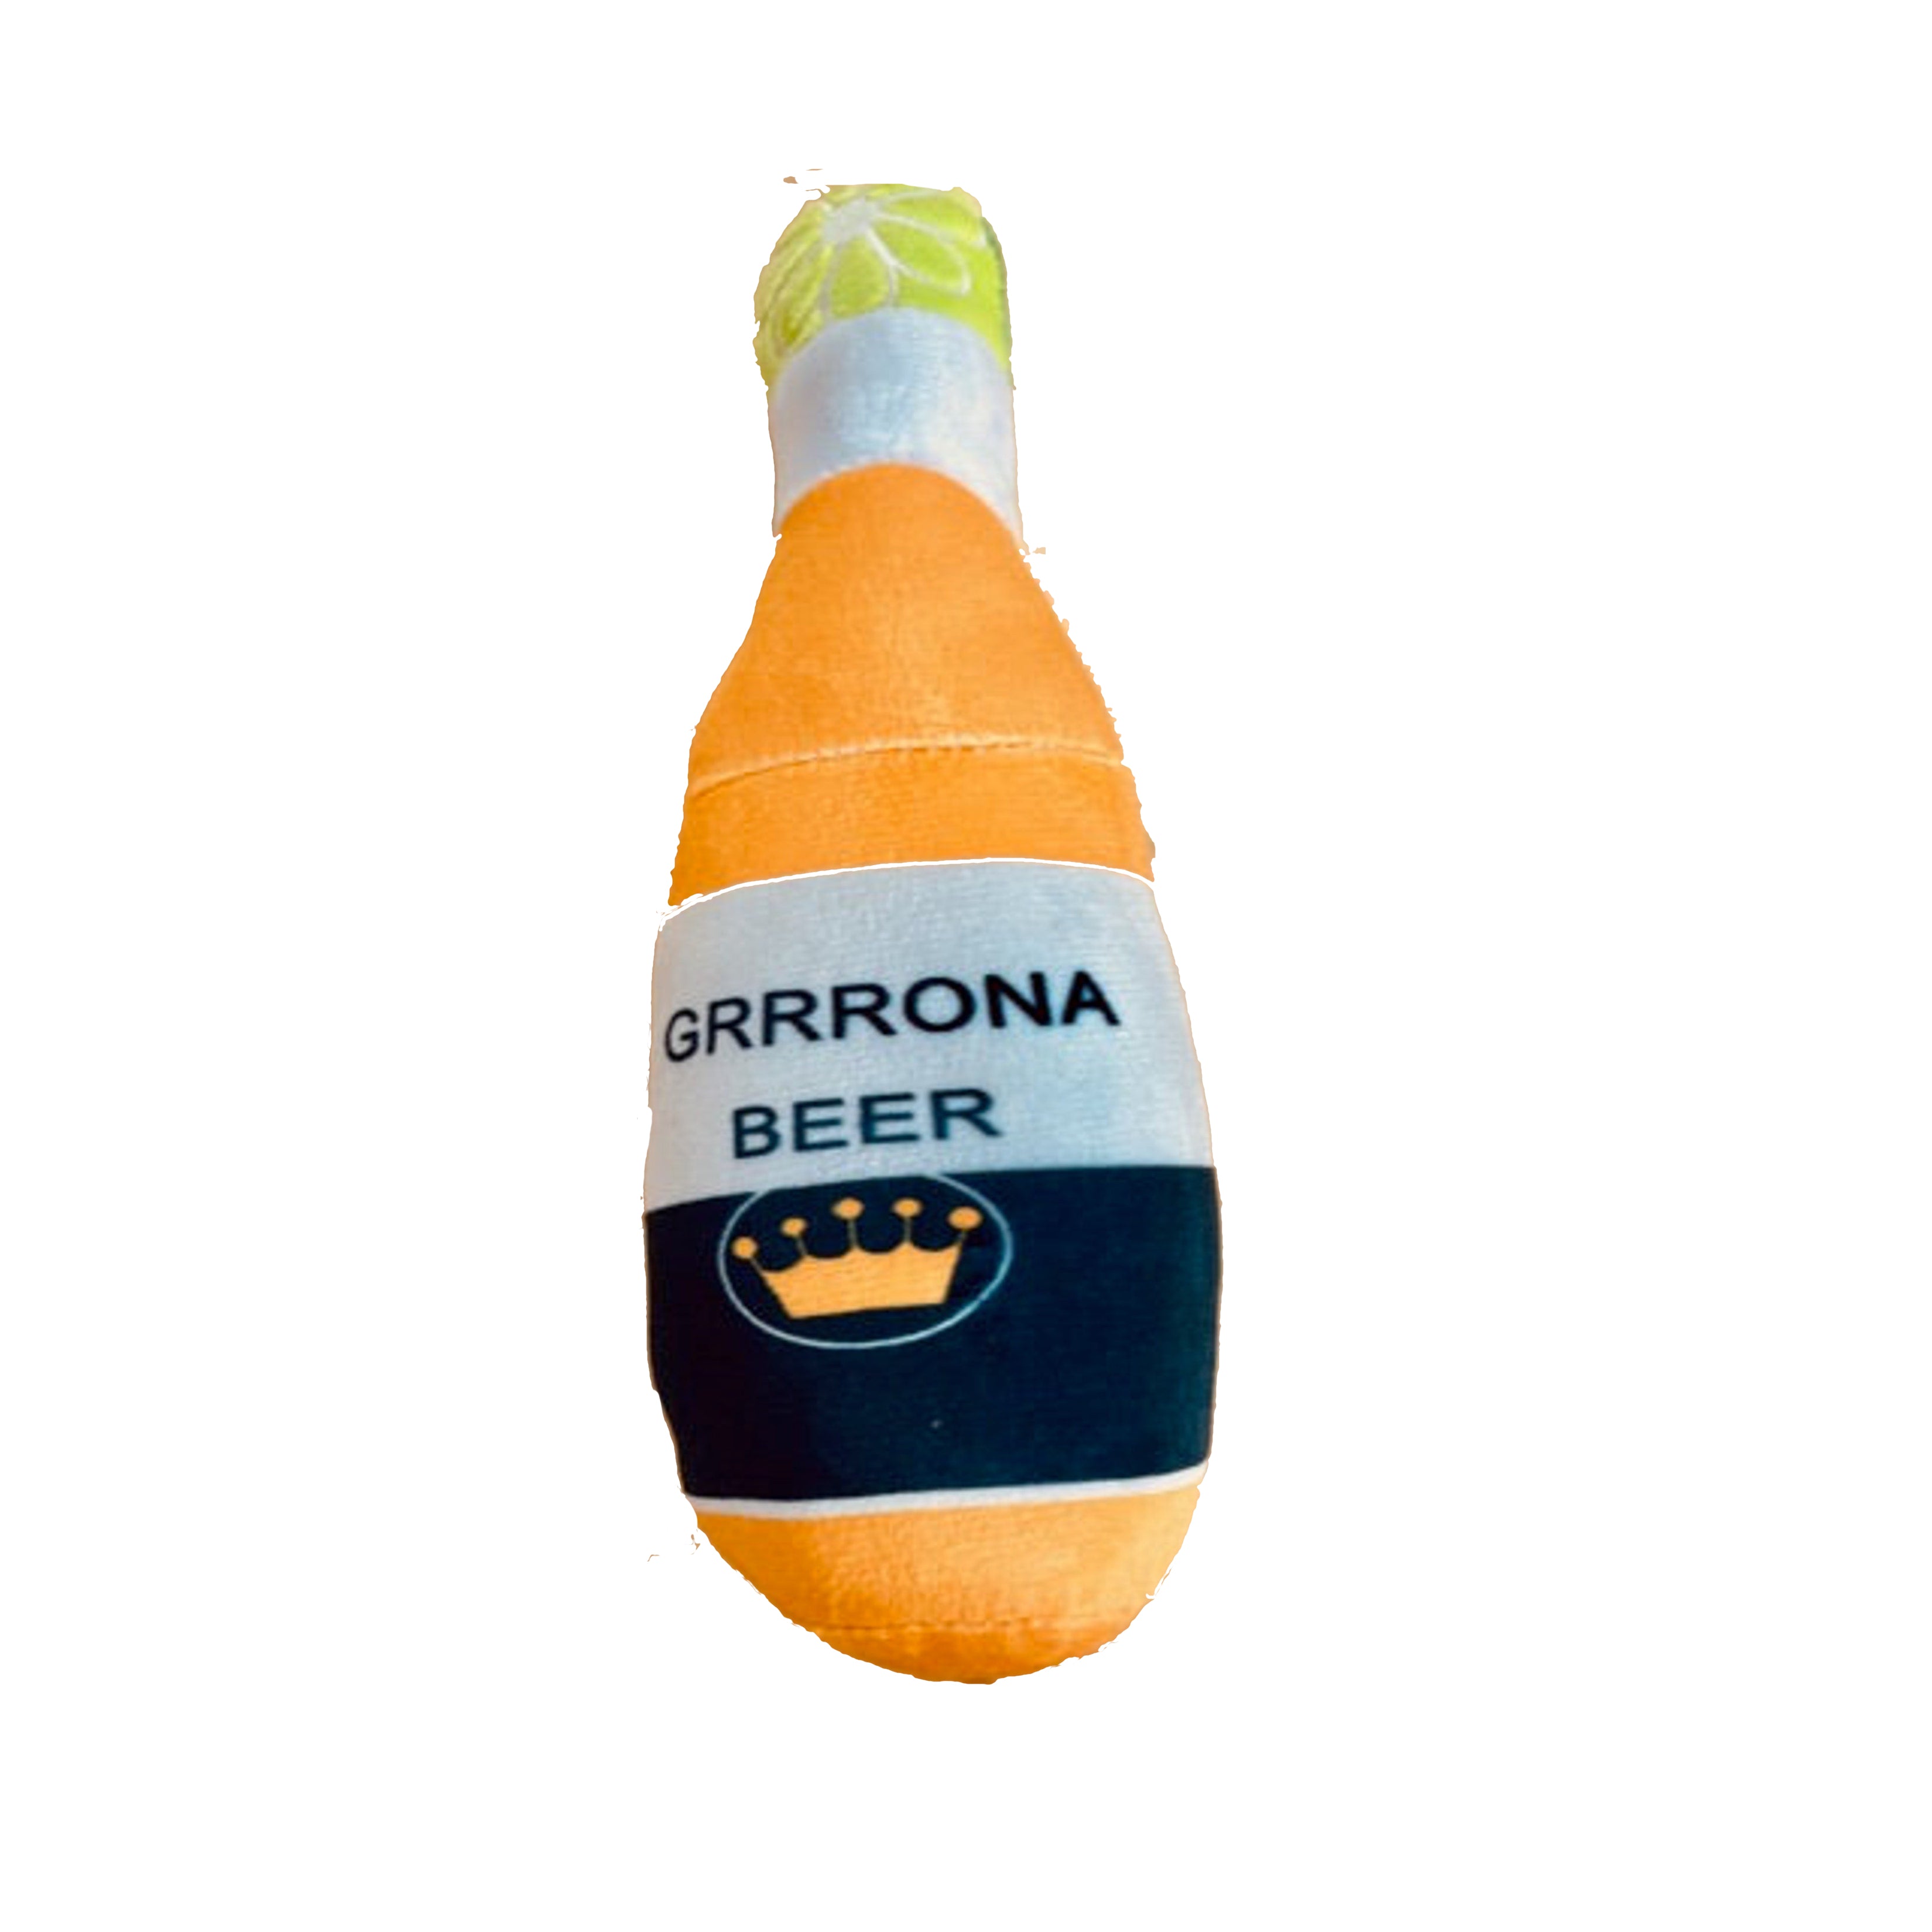 L'BARKERY - Grrrona Beer Bottle Plush Dog Toy